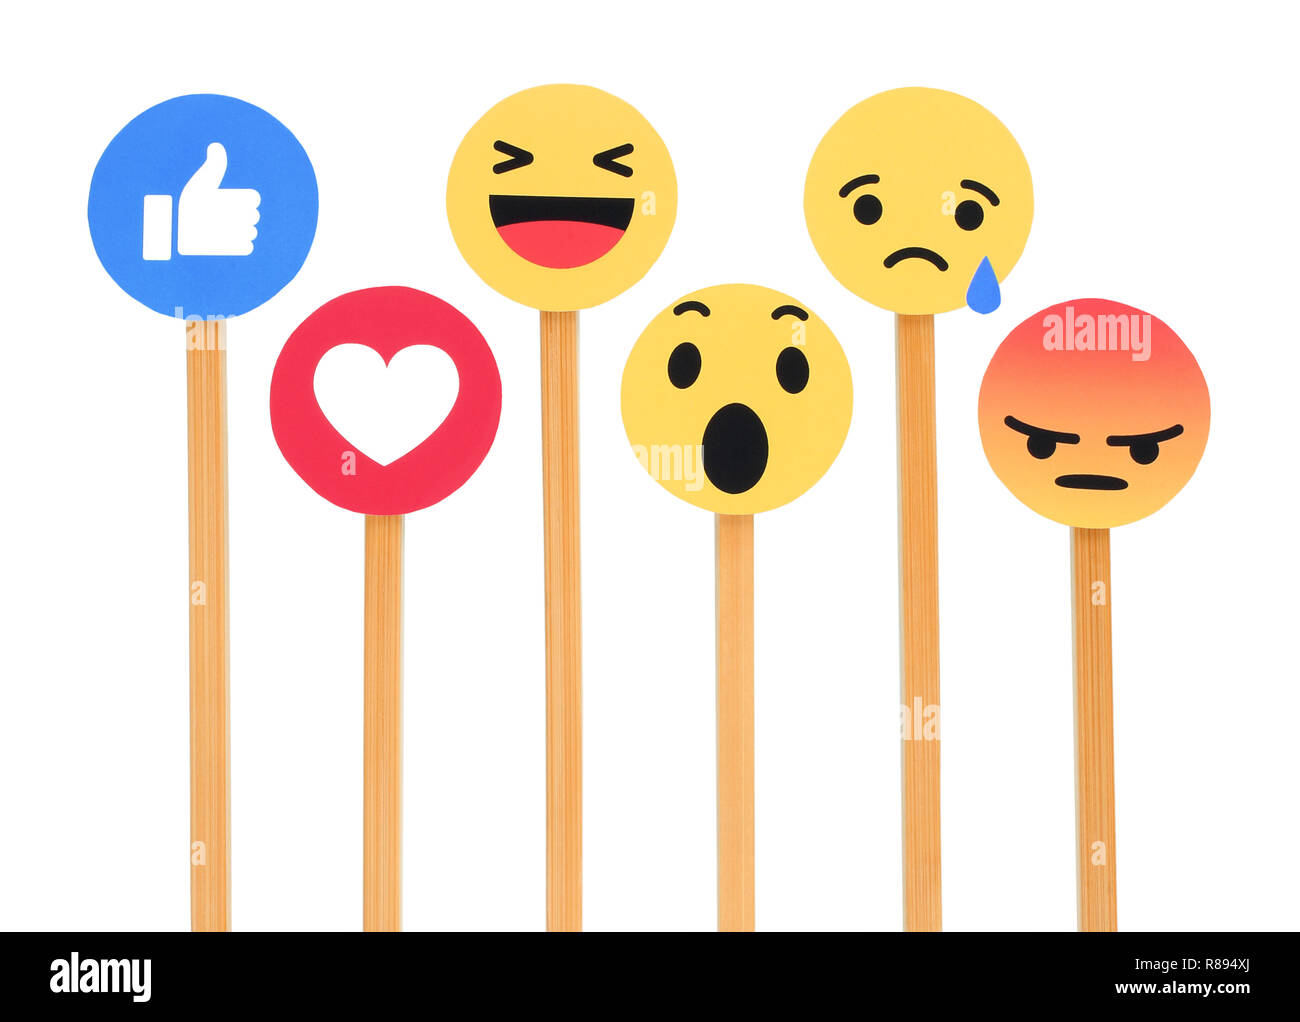 Kiev, Ukraine - le 27 septembre 2018 : Facebook like button 6 Réactions Emoji empathique imprimée sur du papier, couper et mettre des bâtons de bois. Banque D'Images